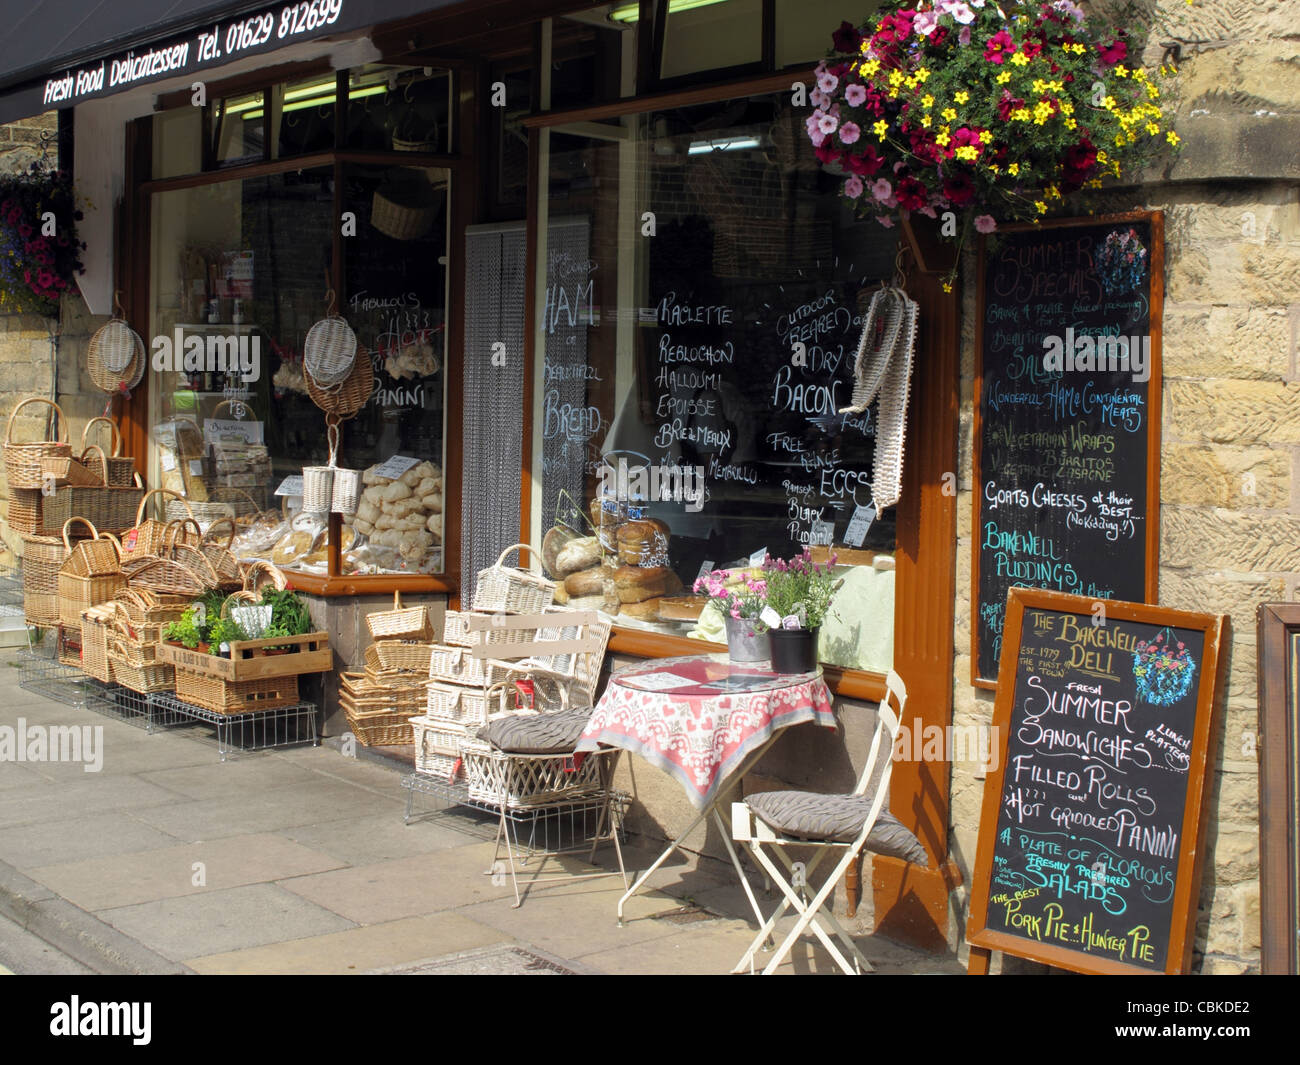 Bunte Brot Ladenfront mit hängenden Korb, Tisch und Stühlen, produzieren in  Bakewell Derbyshire Peak District England Stockfotografie - Alamy